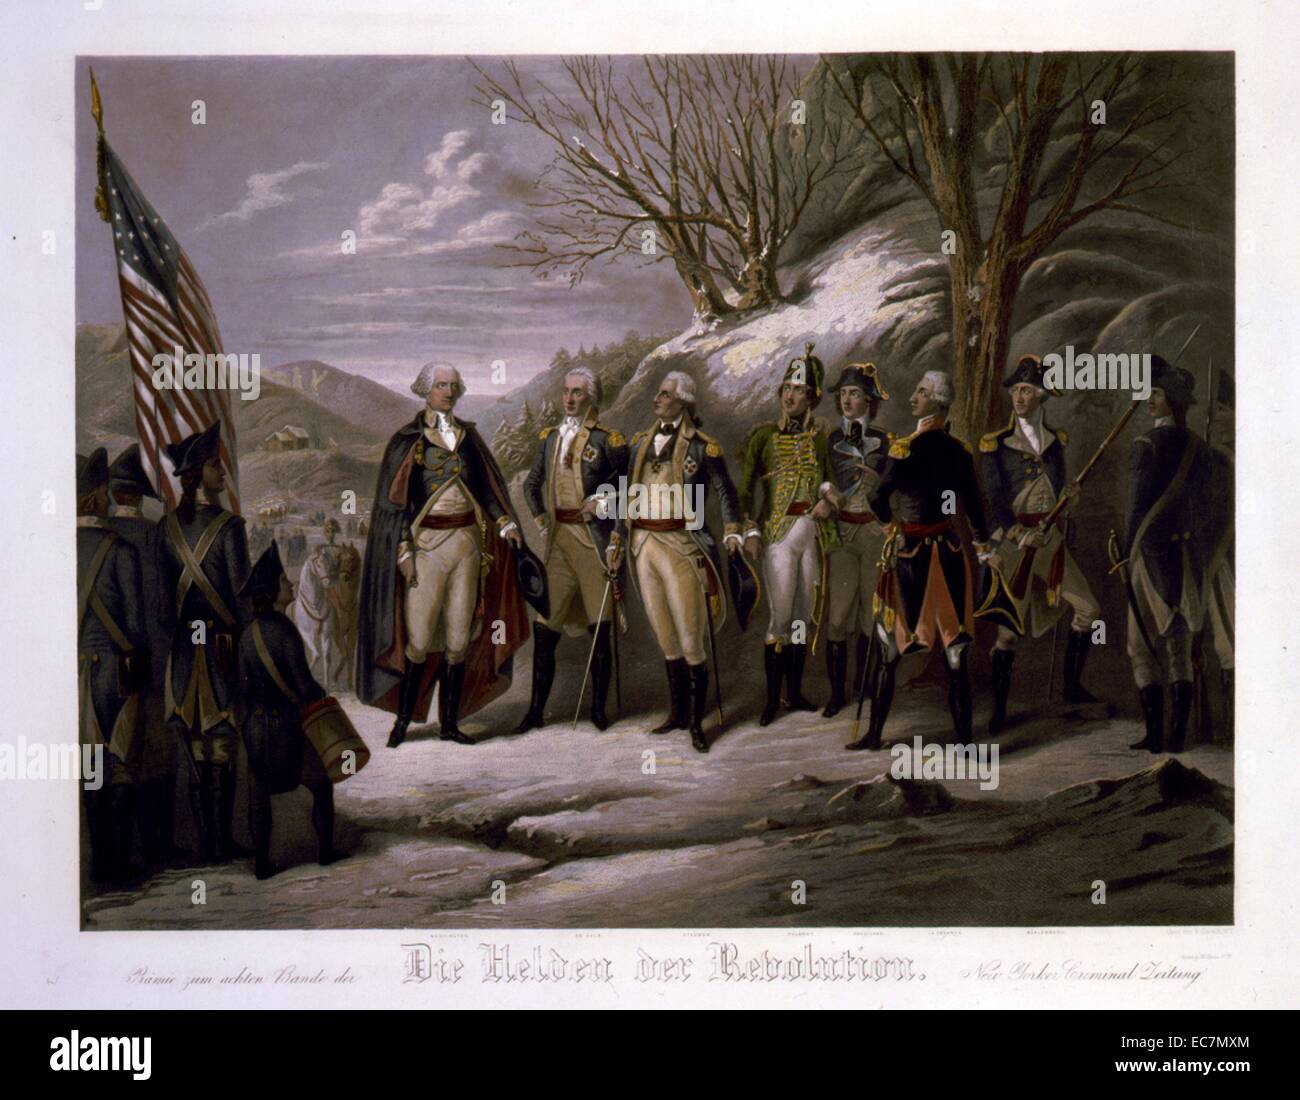 Die Helden der Revolution. Le général Washington debout avec Johann De Kalb, le baron Von Steuben, Kazimierz Pulaski, Tadeusz Kosciuszko, Lafayette, John petite, et d'autres officiers au cours de la guerre révolutionnaire. Banque D'Images